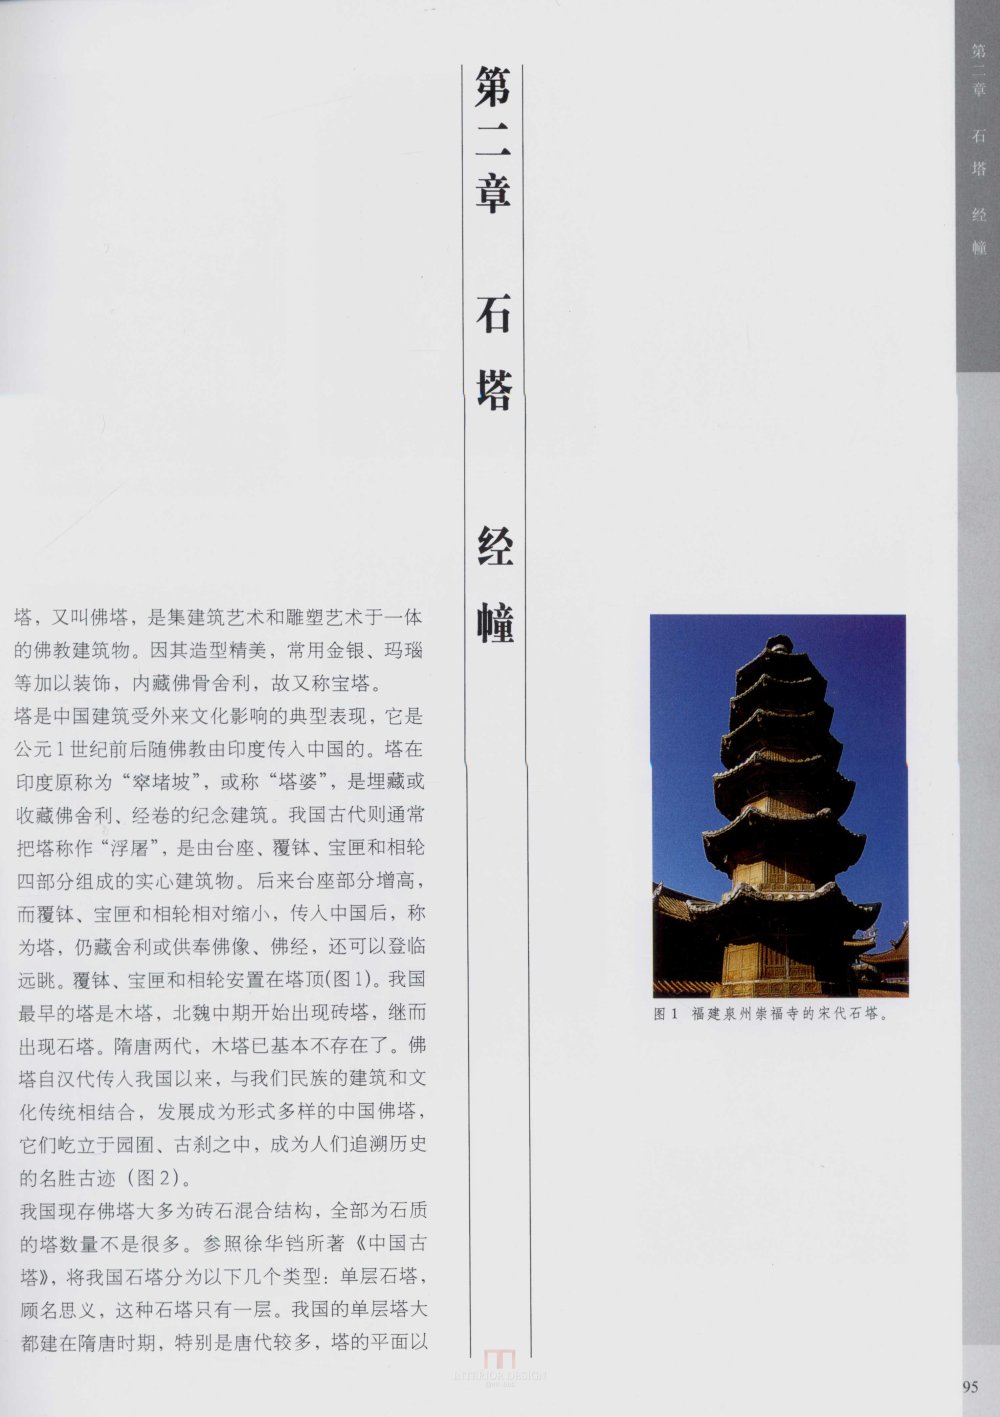 中国古代建筑 石雕_kobe 0103.jpg